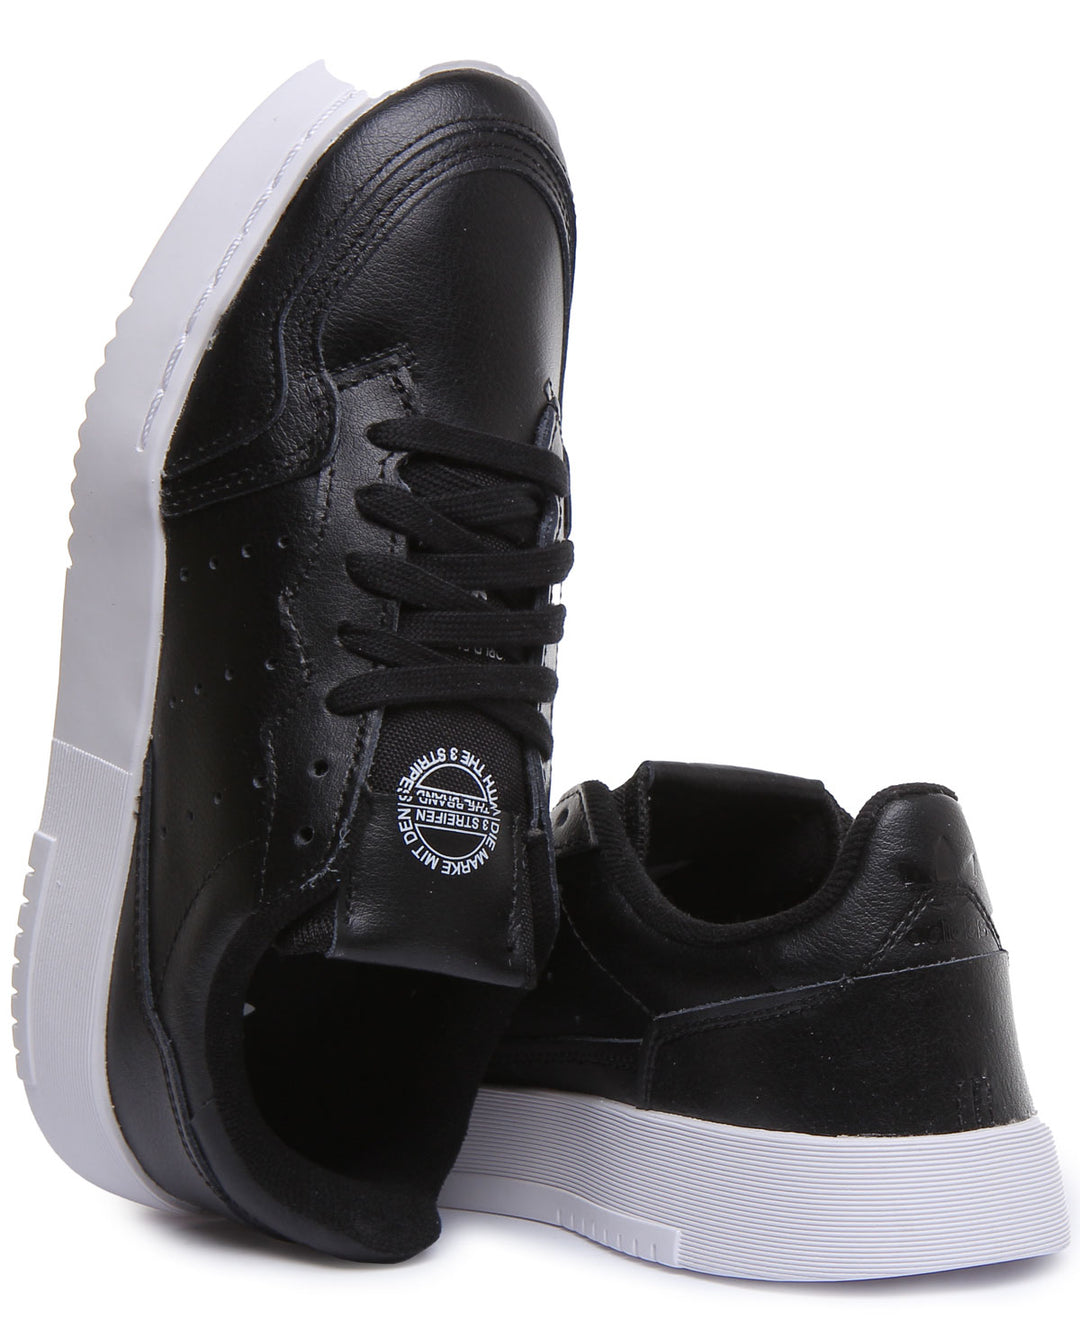 Adidas Supercourt J Zapatillas de cuero con cordones para jóvenes en negro blanco